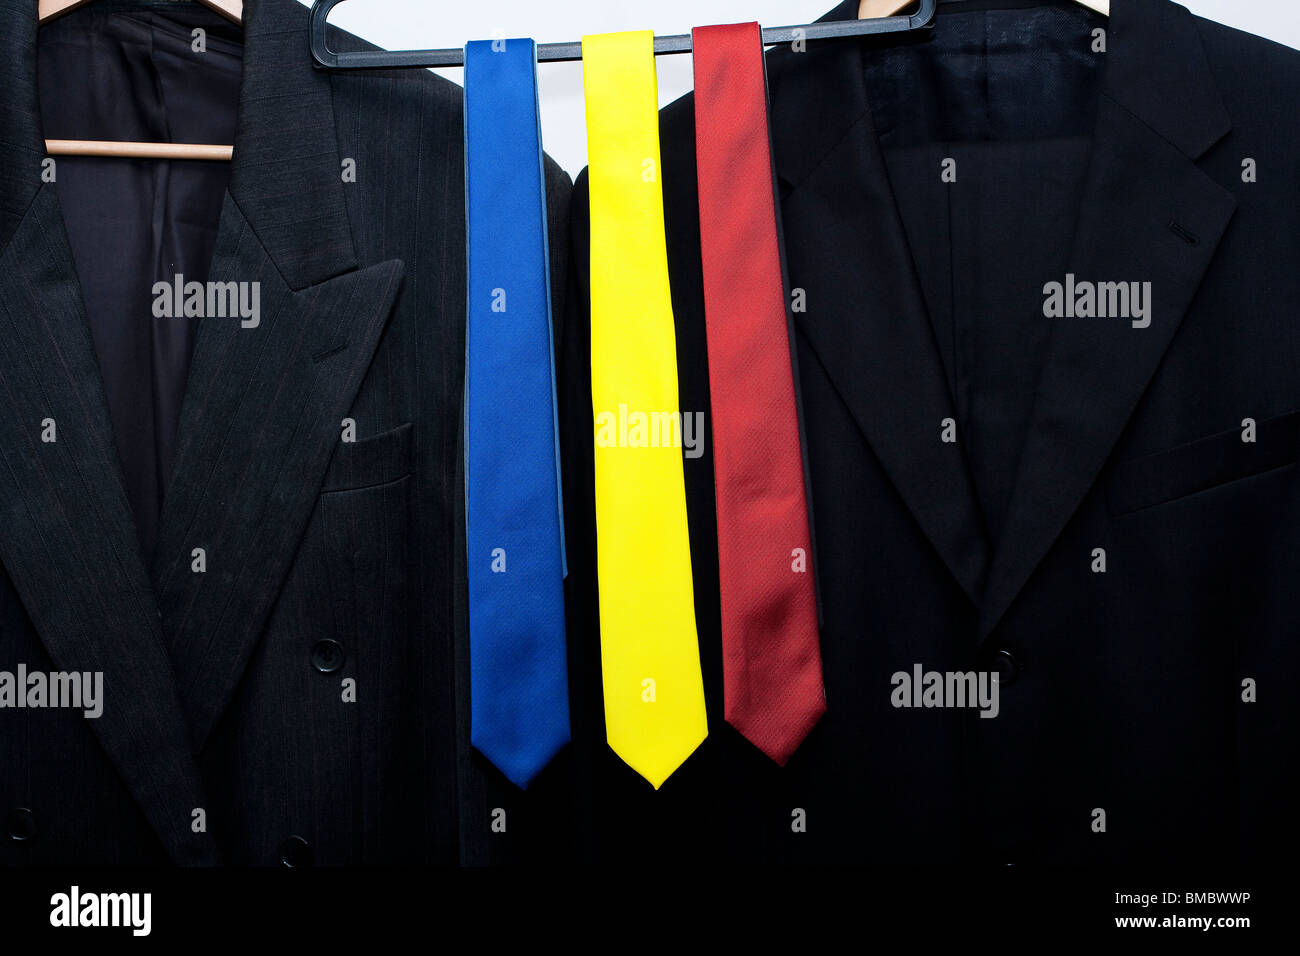 Rouge, bleu et jaune les liens sur rail dans un magasin. suivant les vestons. métaphore pour l'élection générale britannique en 2010 Banque D'Images